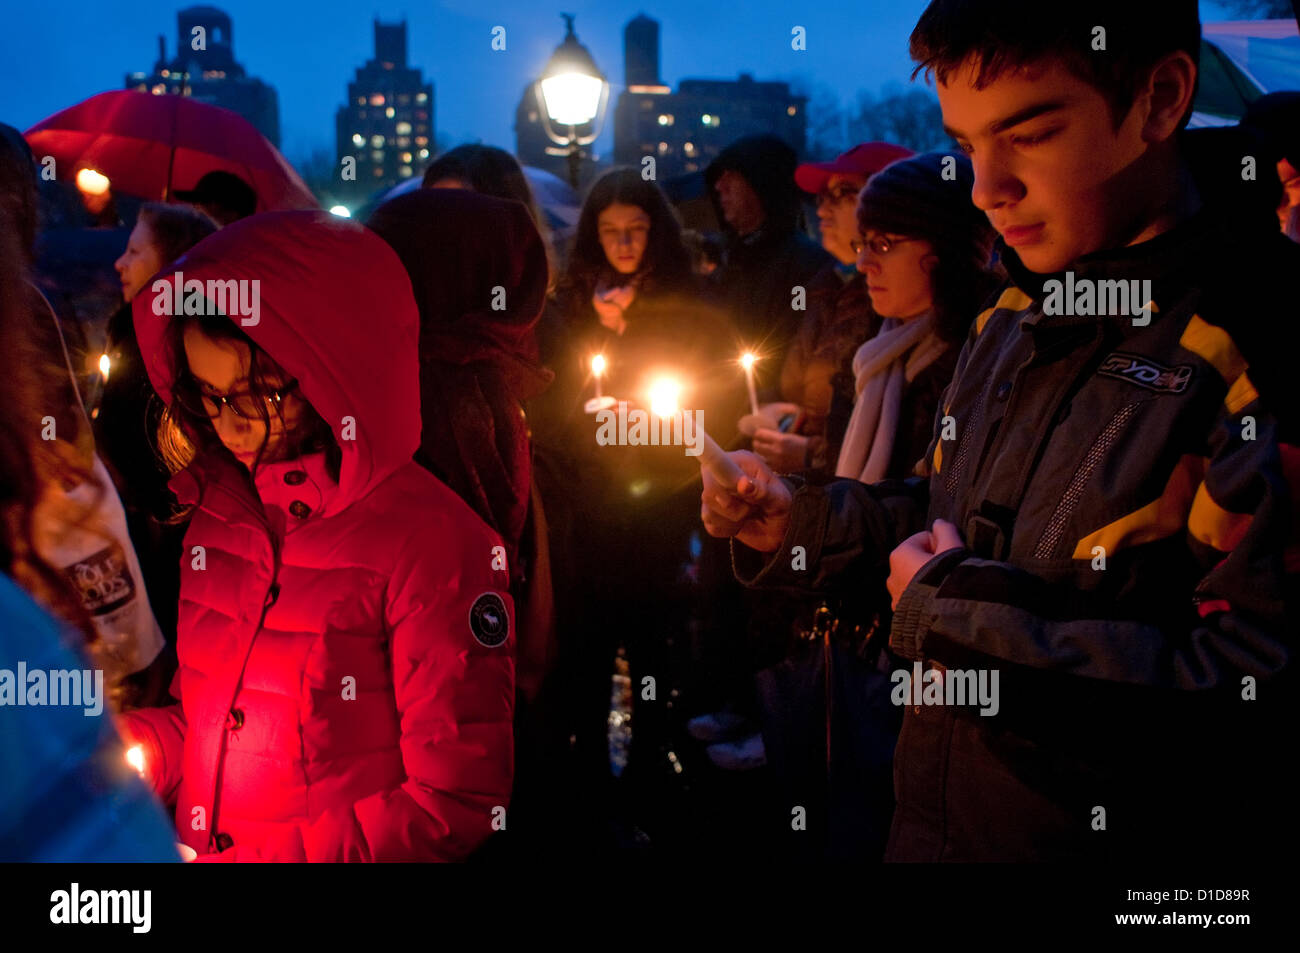 New York, NY - 16 décembre 2012, les New-Yorkais se sont réunis à Washington Square Park pour une veillée aux chandelles pour commémorer les victimes de la fusillade de l'école élémentaire de Sandy Hook et à appeler à un renforcement des lois de contrôle des armes à feu. Banque D'Images